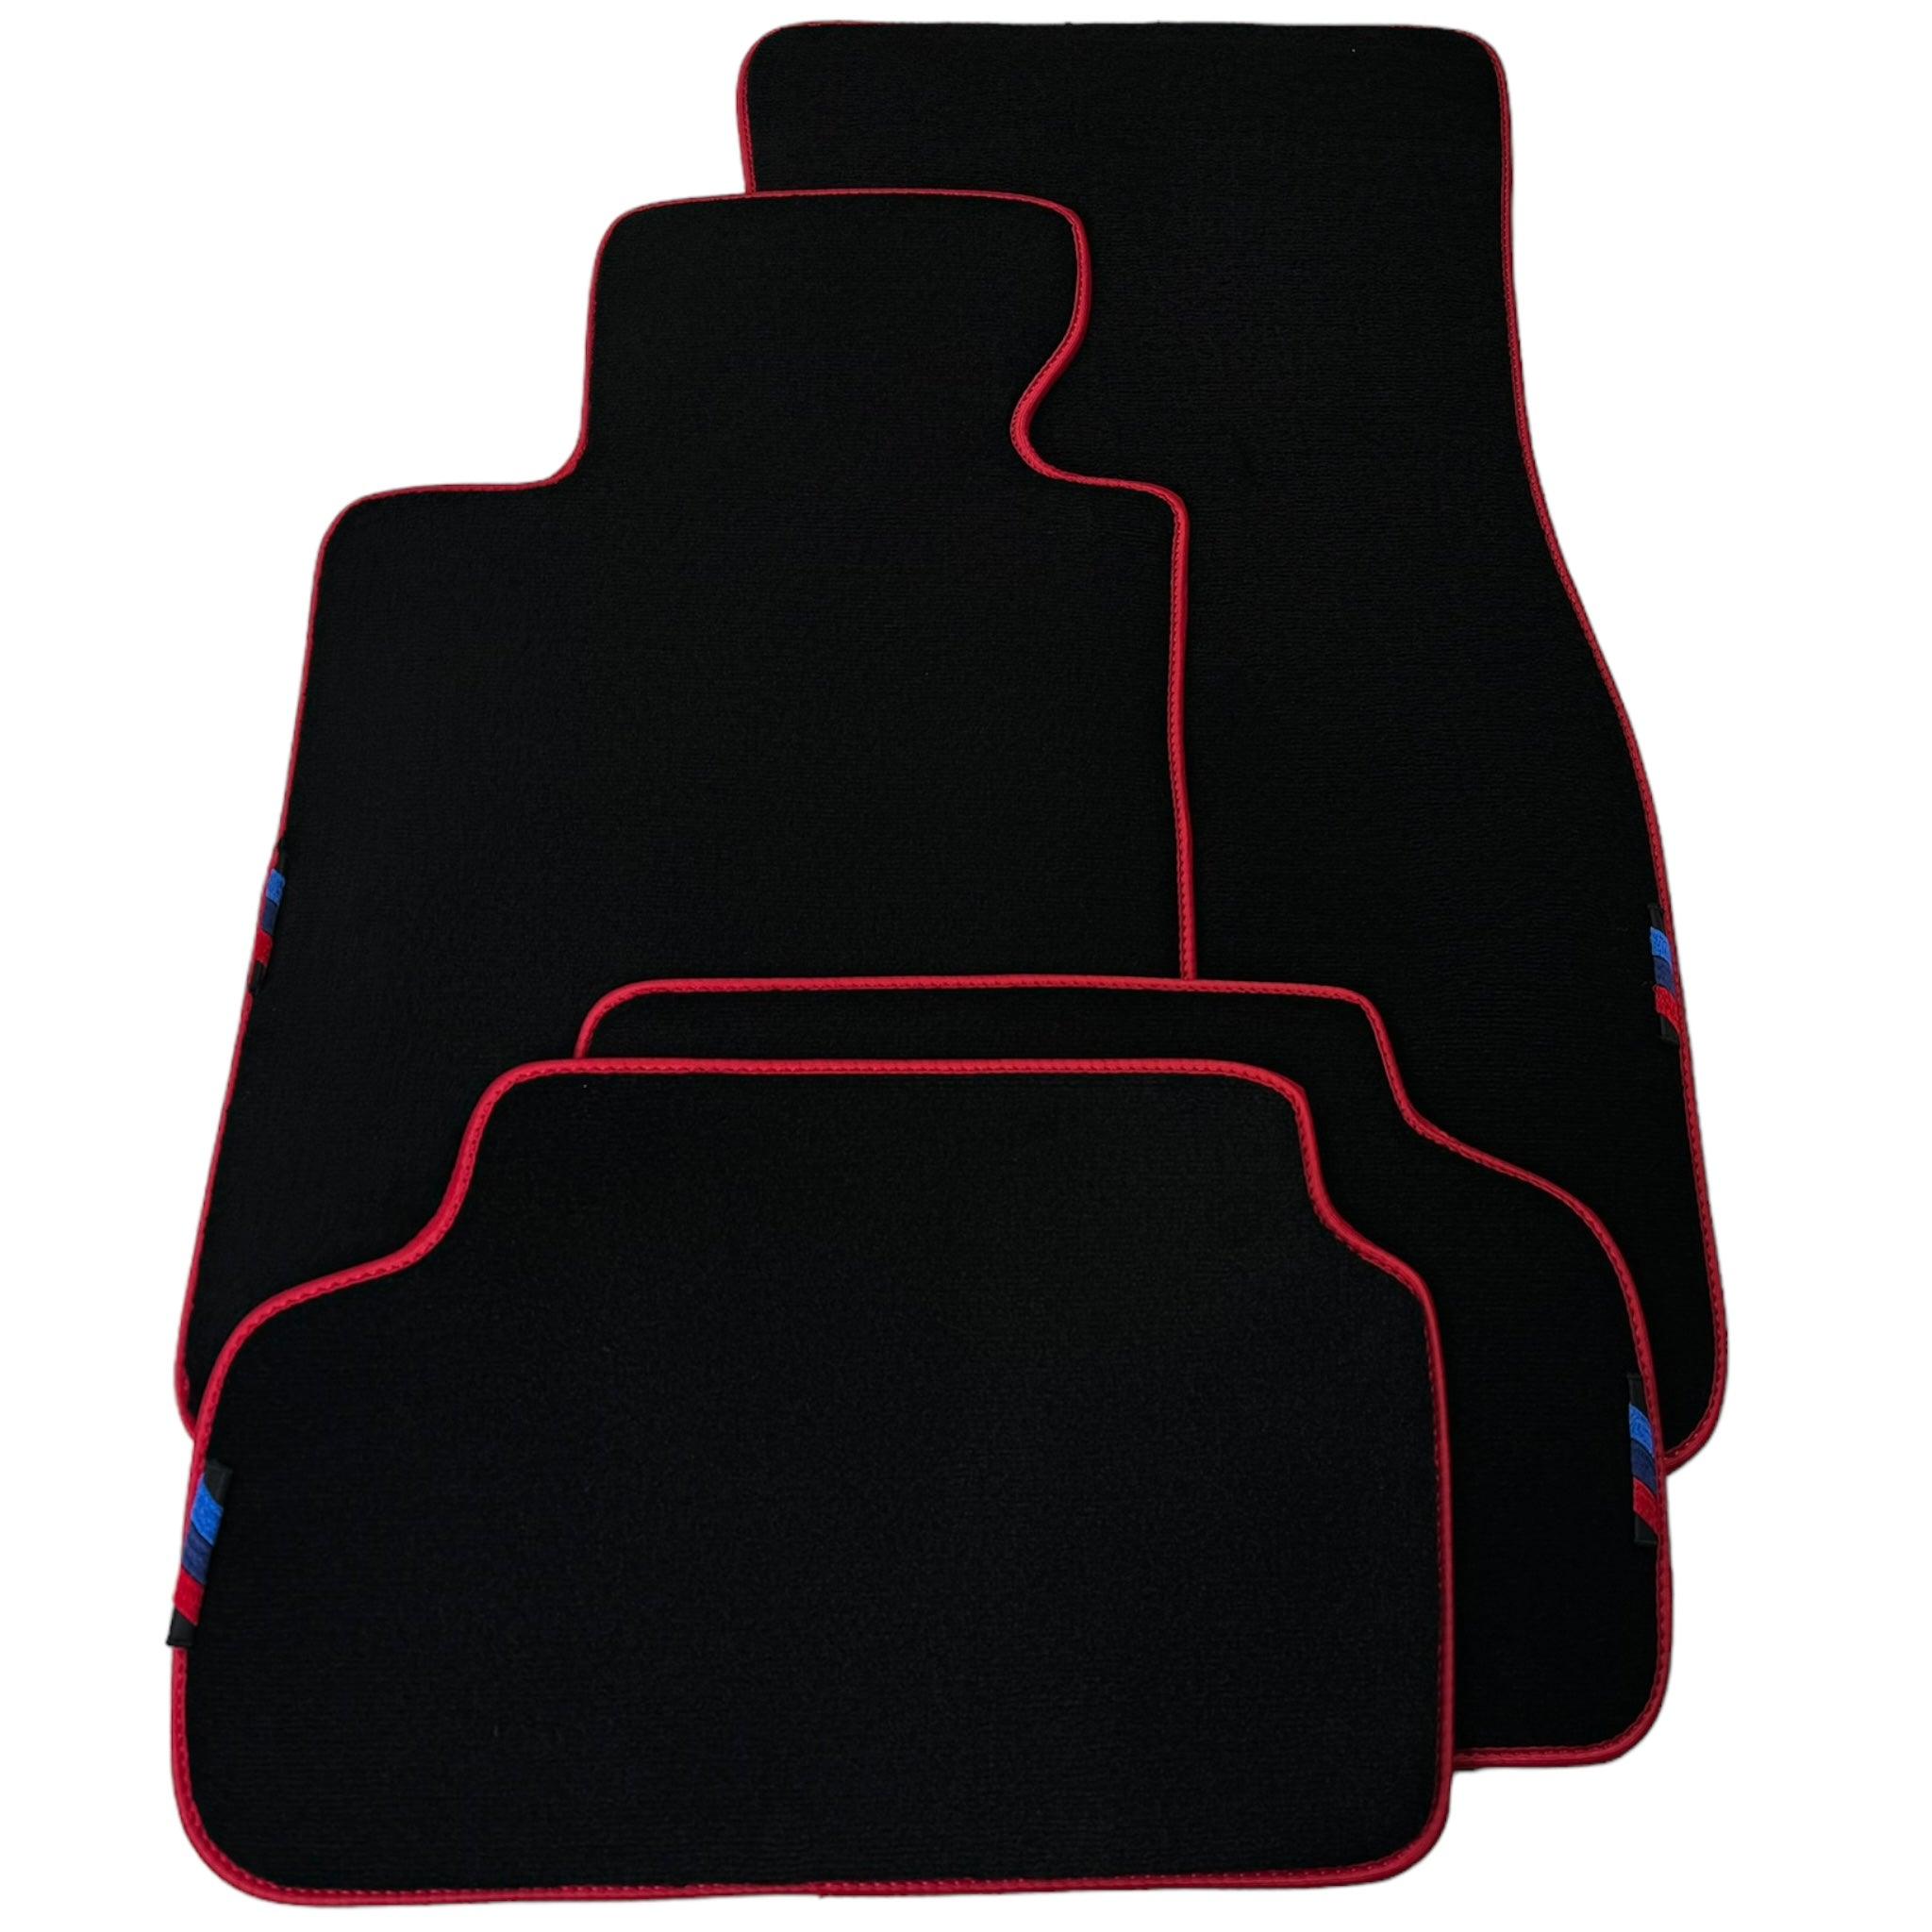 Black Floor Mats For BMW 6 Series F13 2-door Coupe | Red Trim